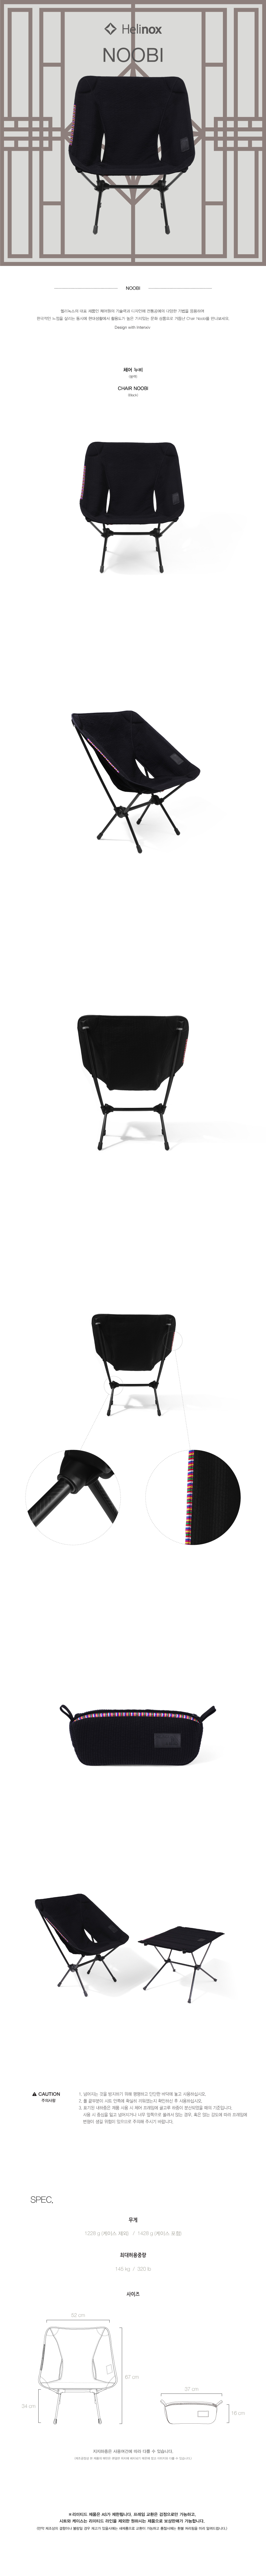 20170517-chair-noobi-.jpg